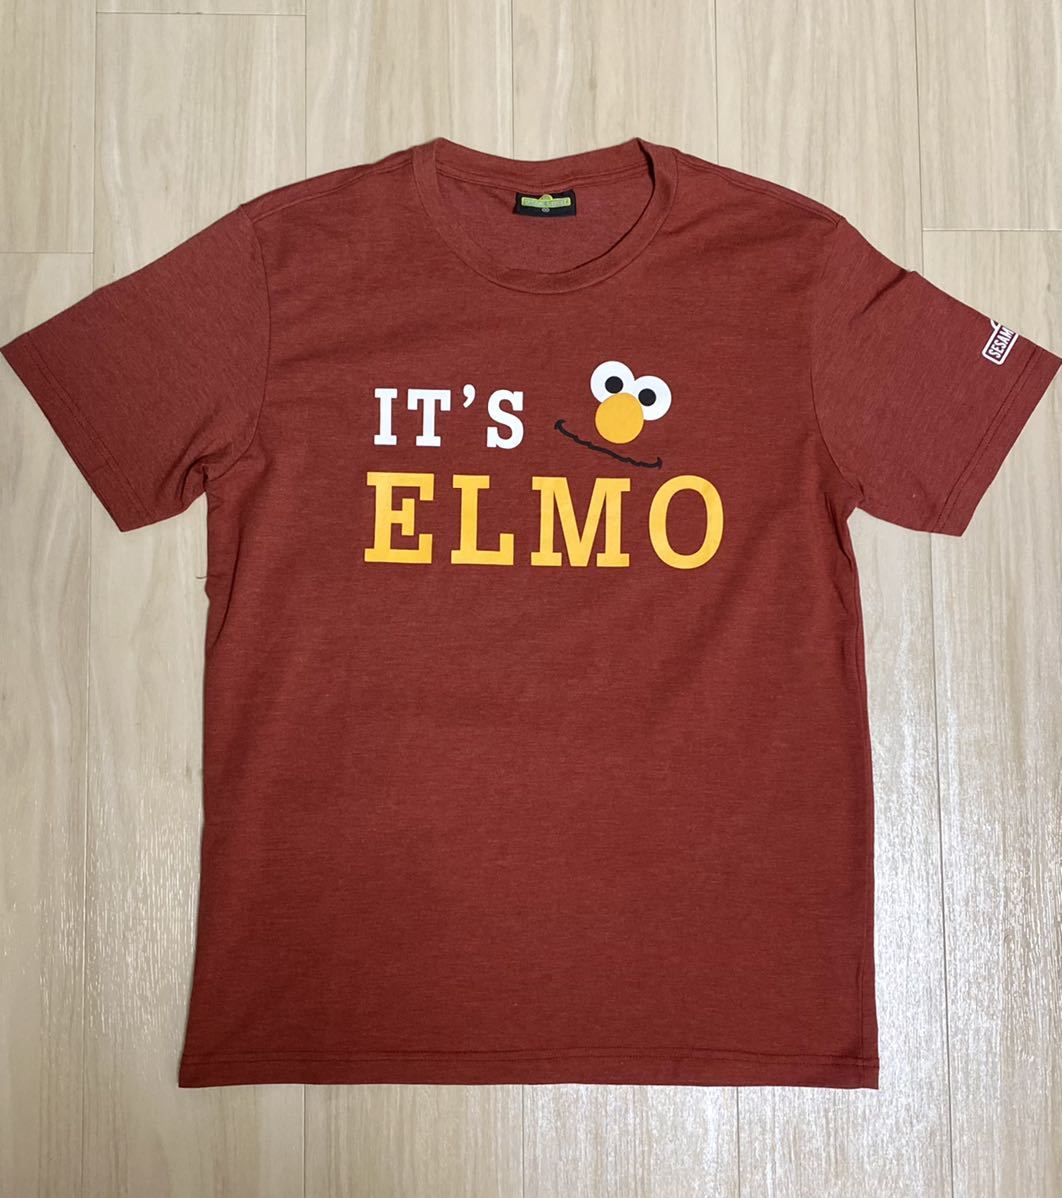 セサミストリート「IT’S ELMO」Tシャツ■2018年コピーライツ有■Mサイズ■エルモSESAME STREETアメカジ古着_画像1